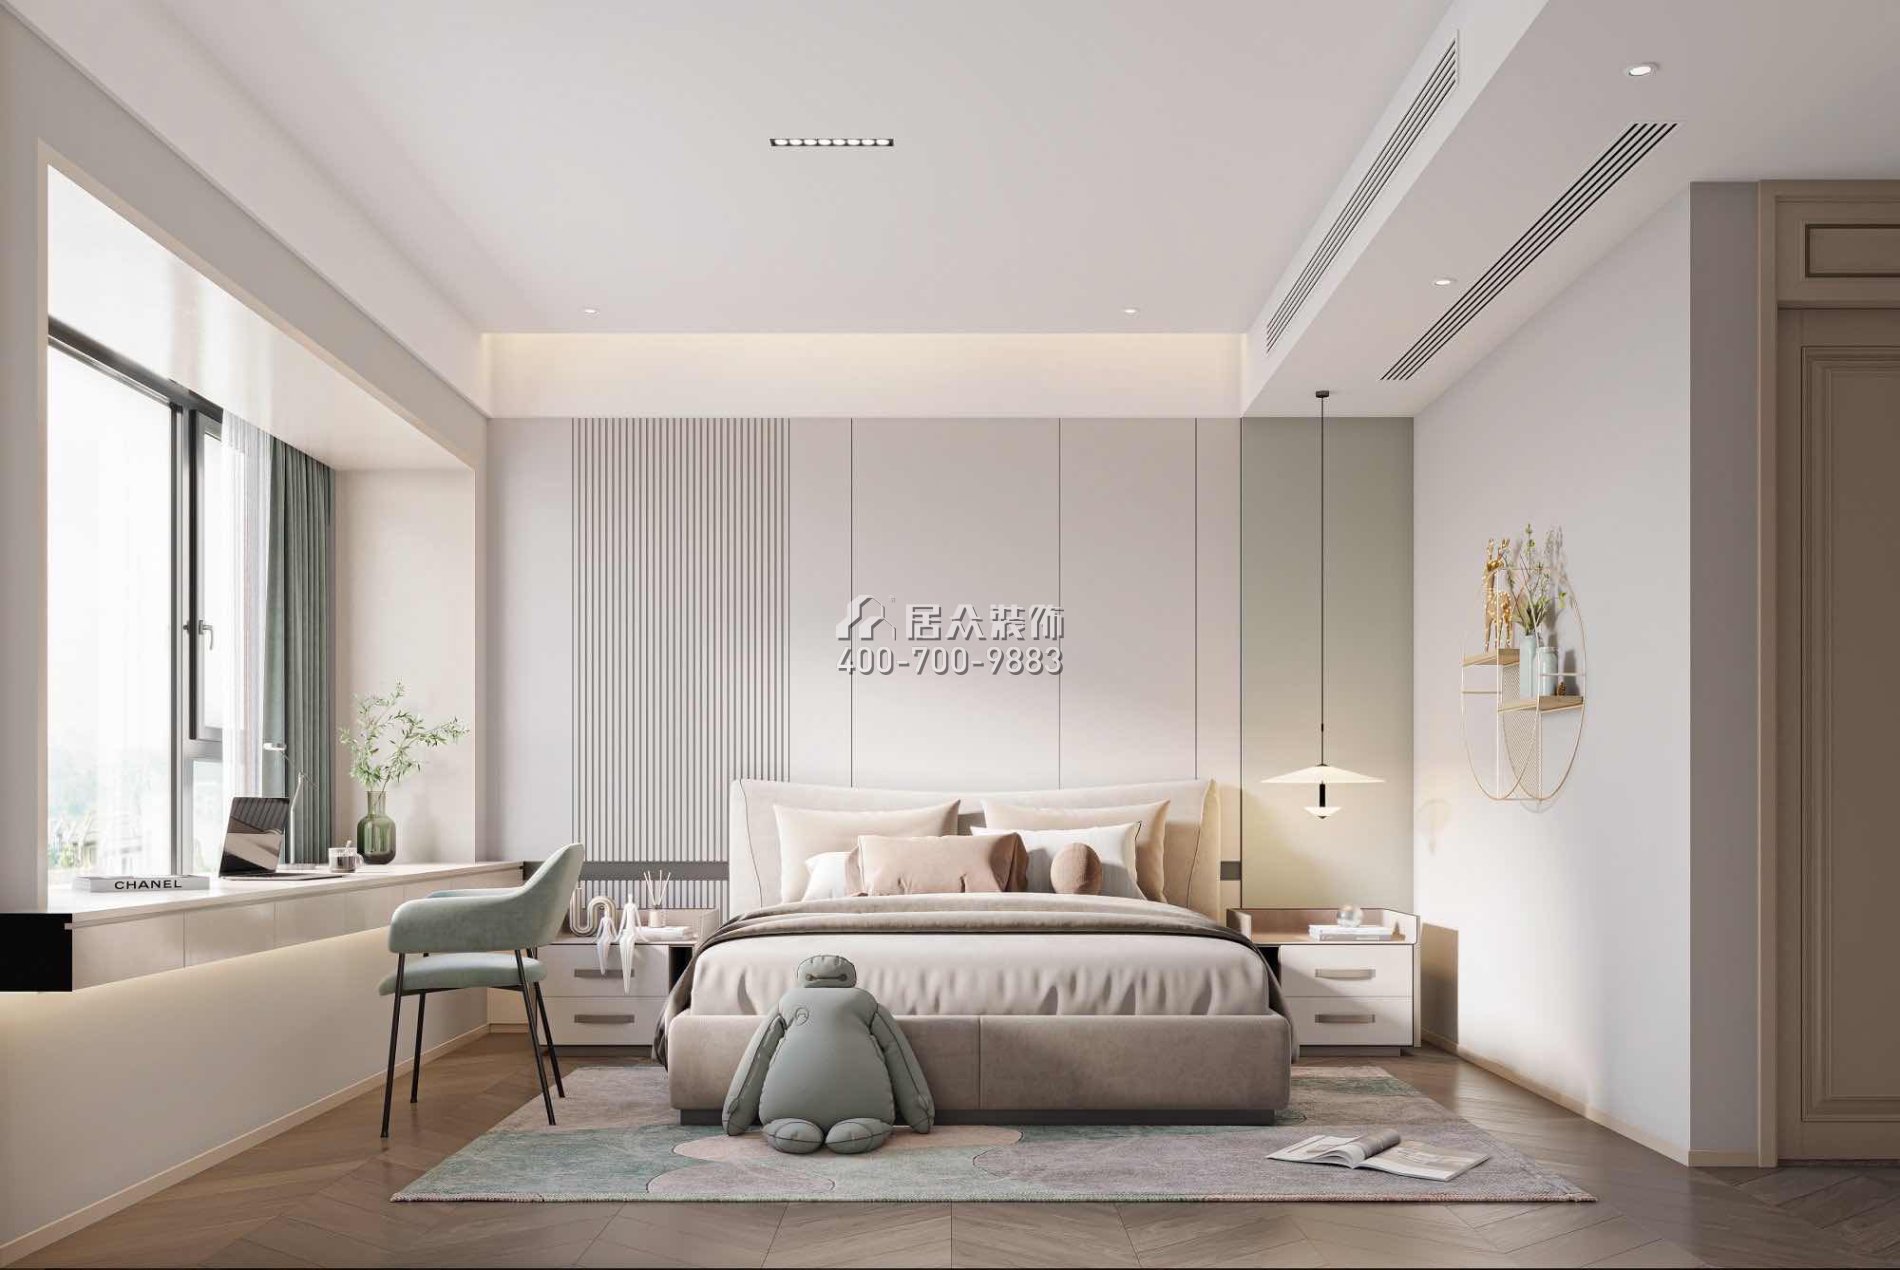 恒裕水墨兰亭350平方米中式风格复式户型卧室装修效果图